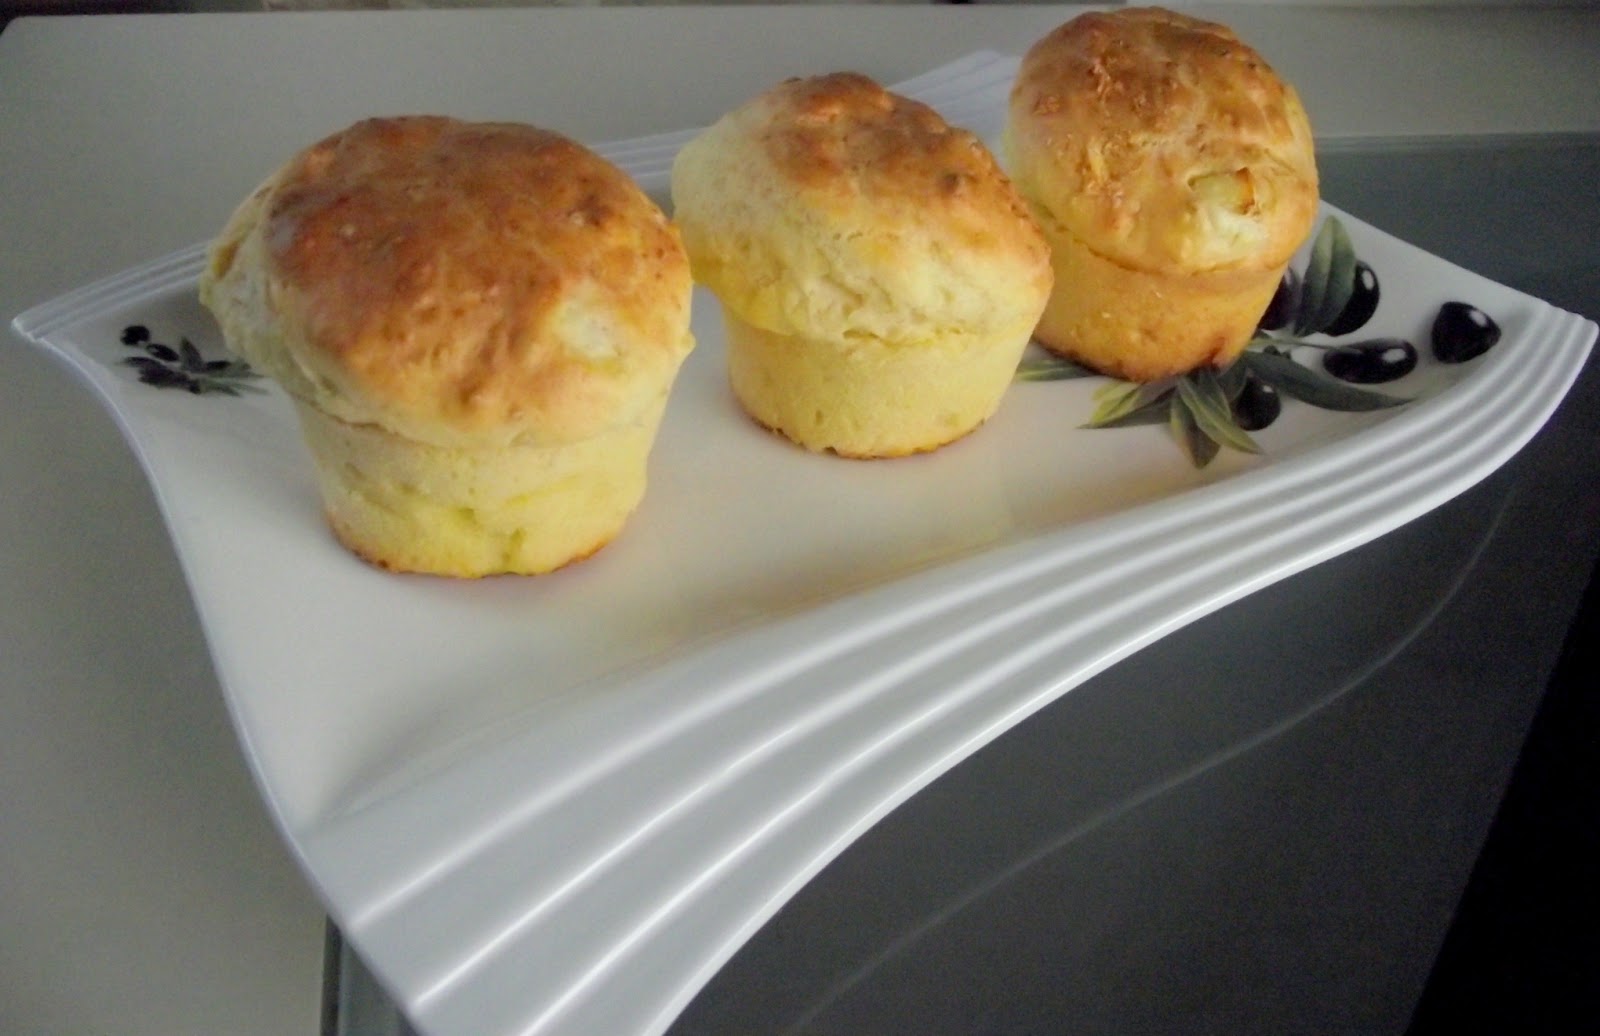 Közlenmiş Biberli Peynirli Muffin nasıl yapılır? Gerekli malzemeler ve püf noktaları neler? İşte Közlenmiş Biberli Peynirli Muffin tarifi!